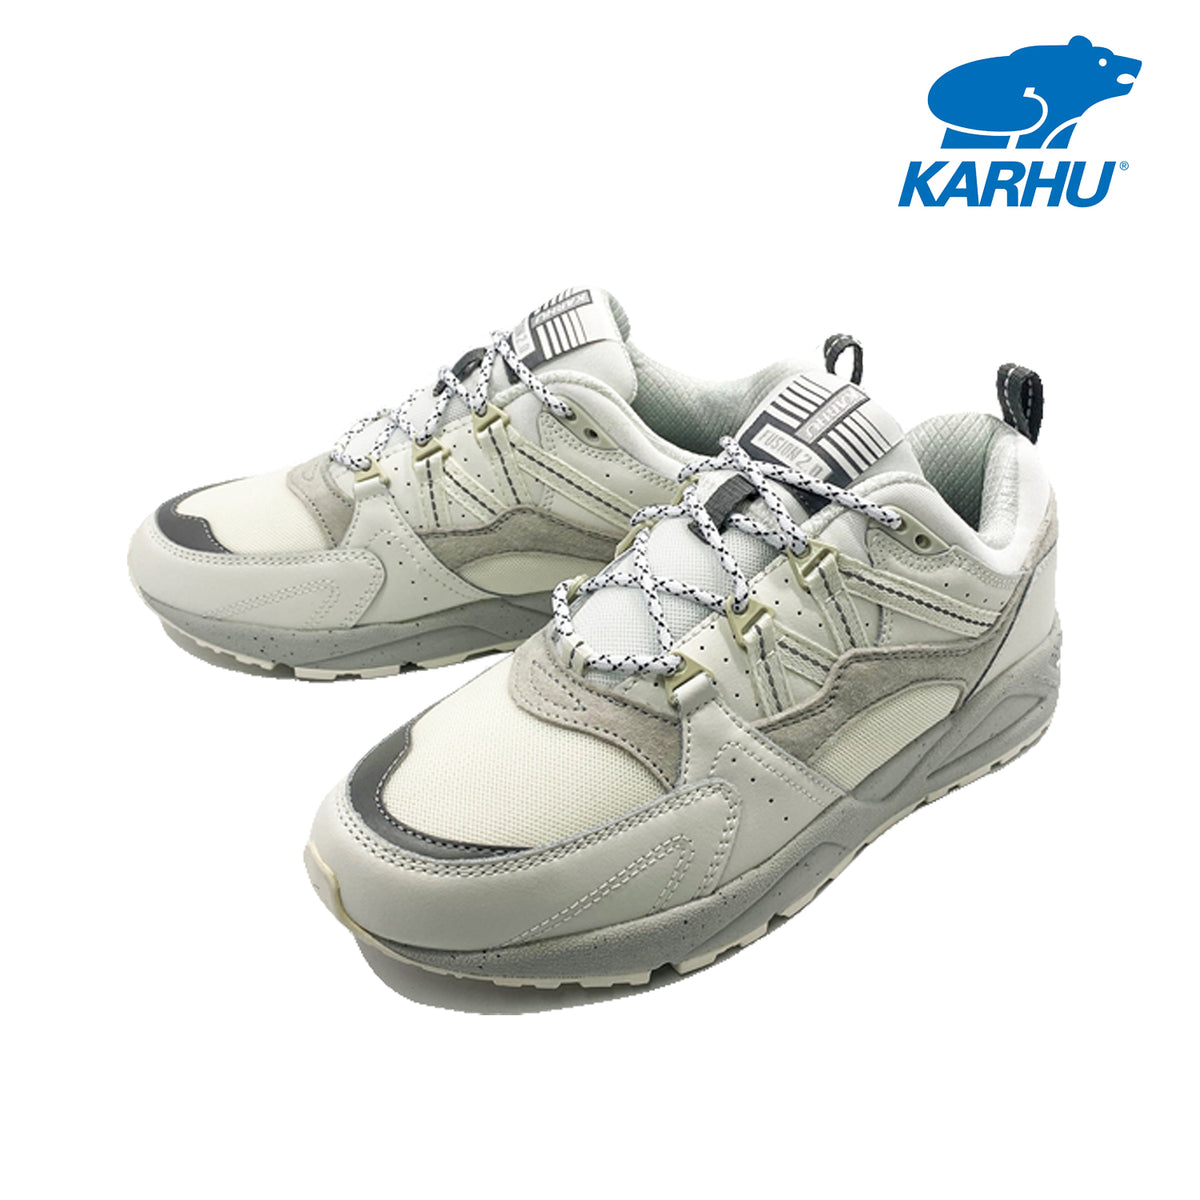 カルフ スニーカー 靴 KARHU メンズ レディース FUSION 2.0 